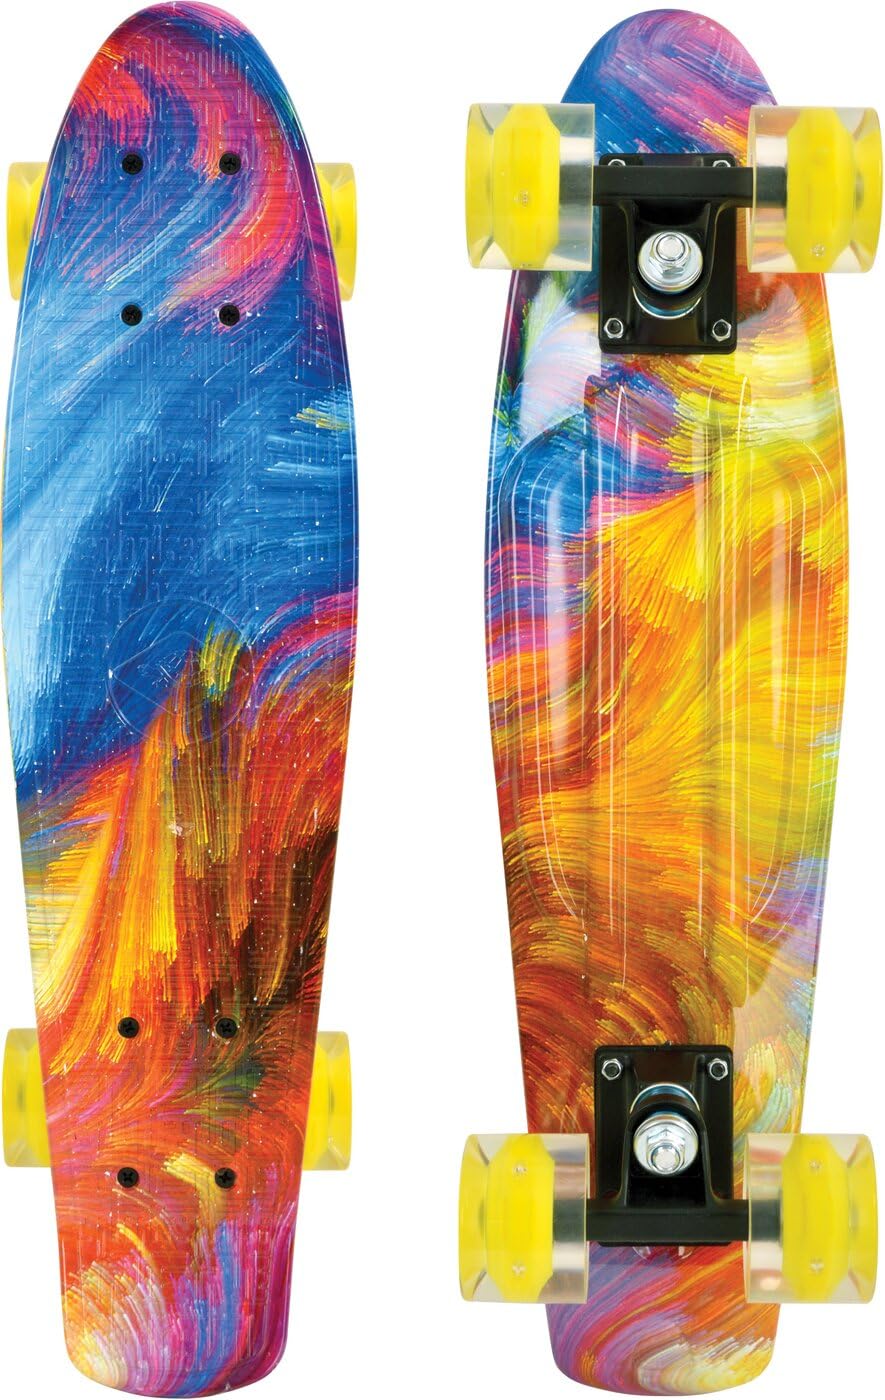 Schildkröt® Retro Skateboard Free Spirit, Premium Beach Board mit coolem Deckdesign, leuchtende LED Rollen, Design: Hurricane, 510783